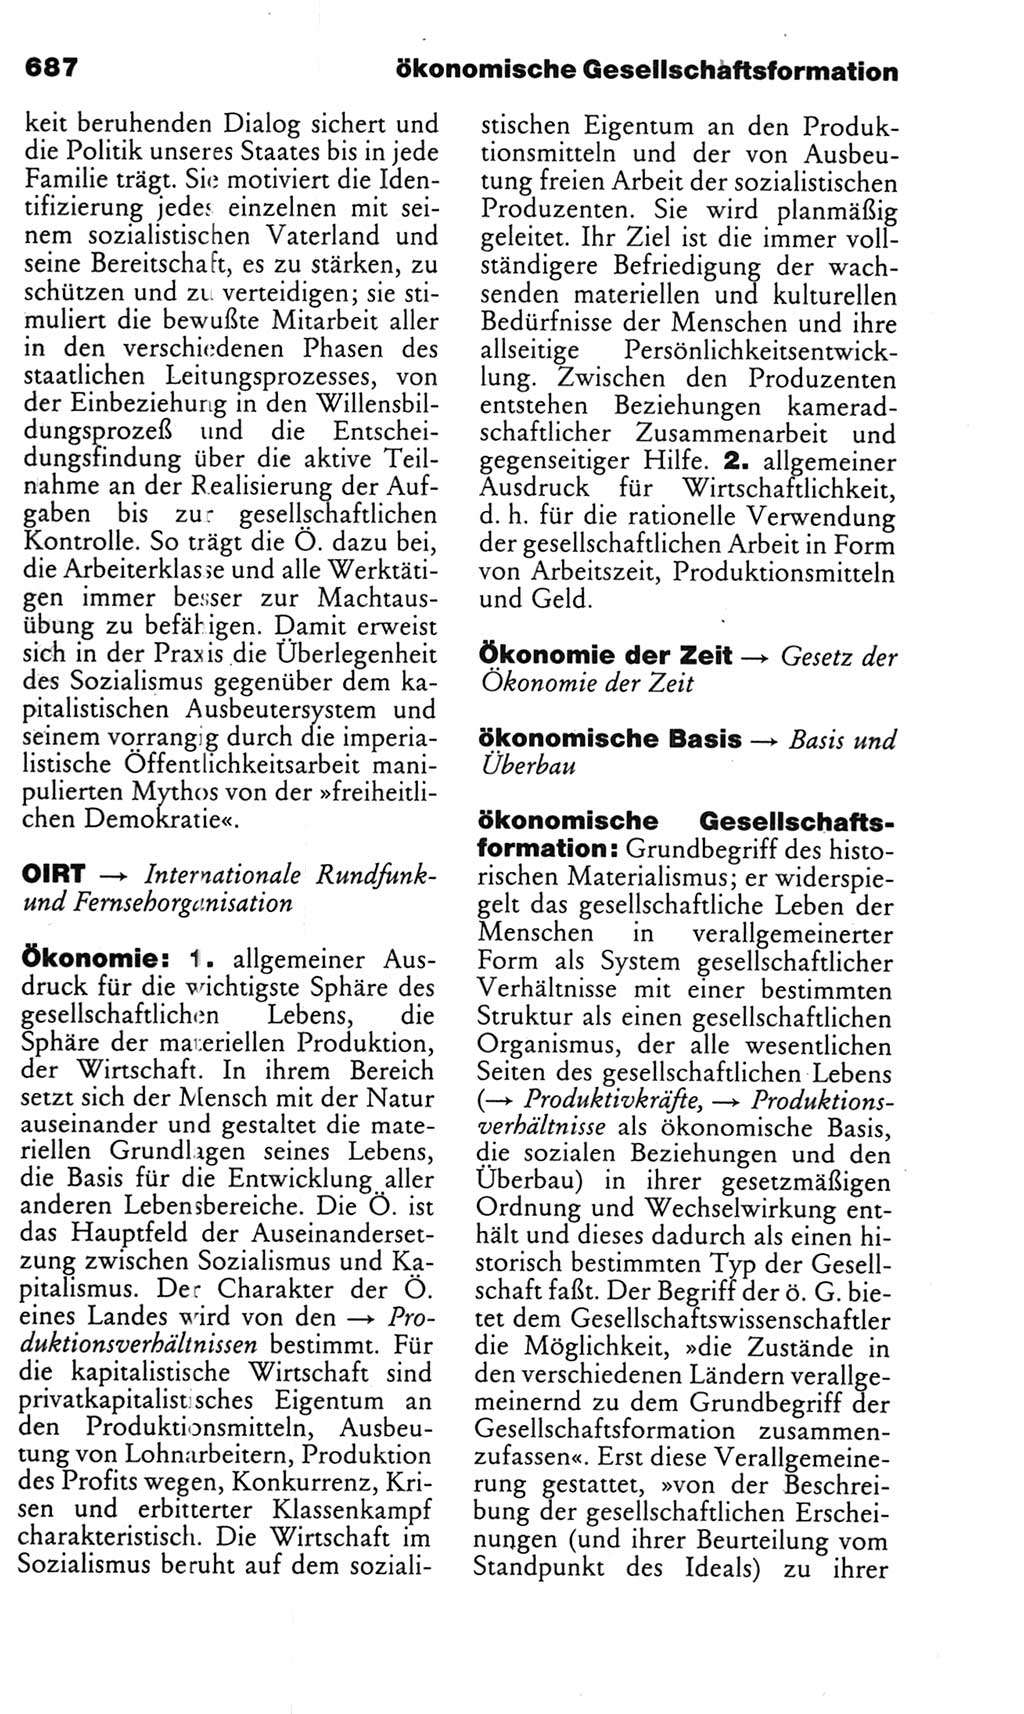 Kleines politisches Wörterbuch [Deutsche Demokratische Republik (DDR)] 1985, Seite 687 (Kl. pol. Wb. DDR 1985, S. 687)